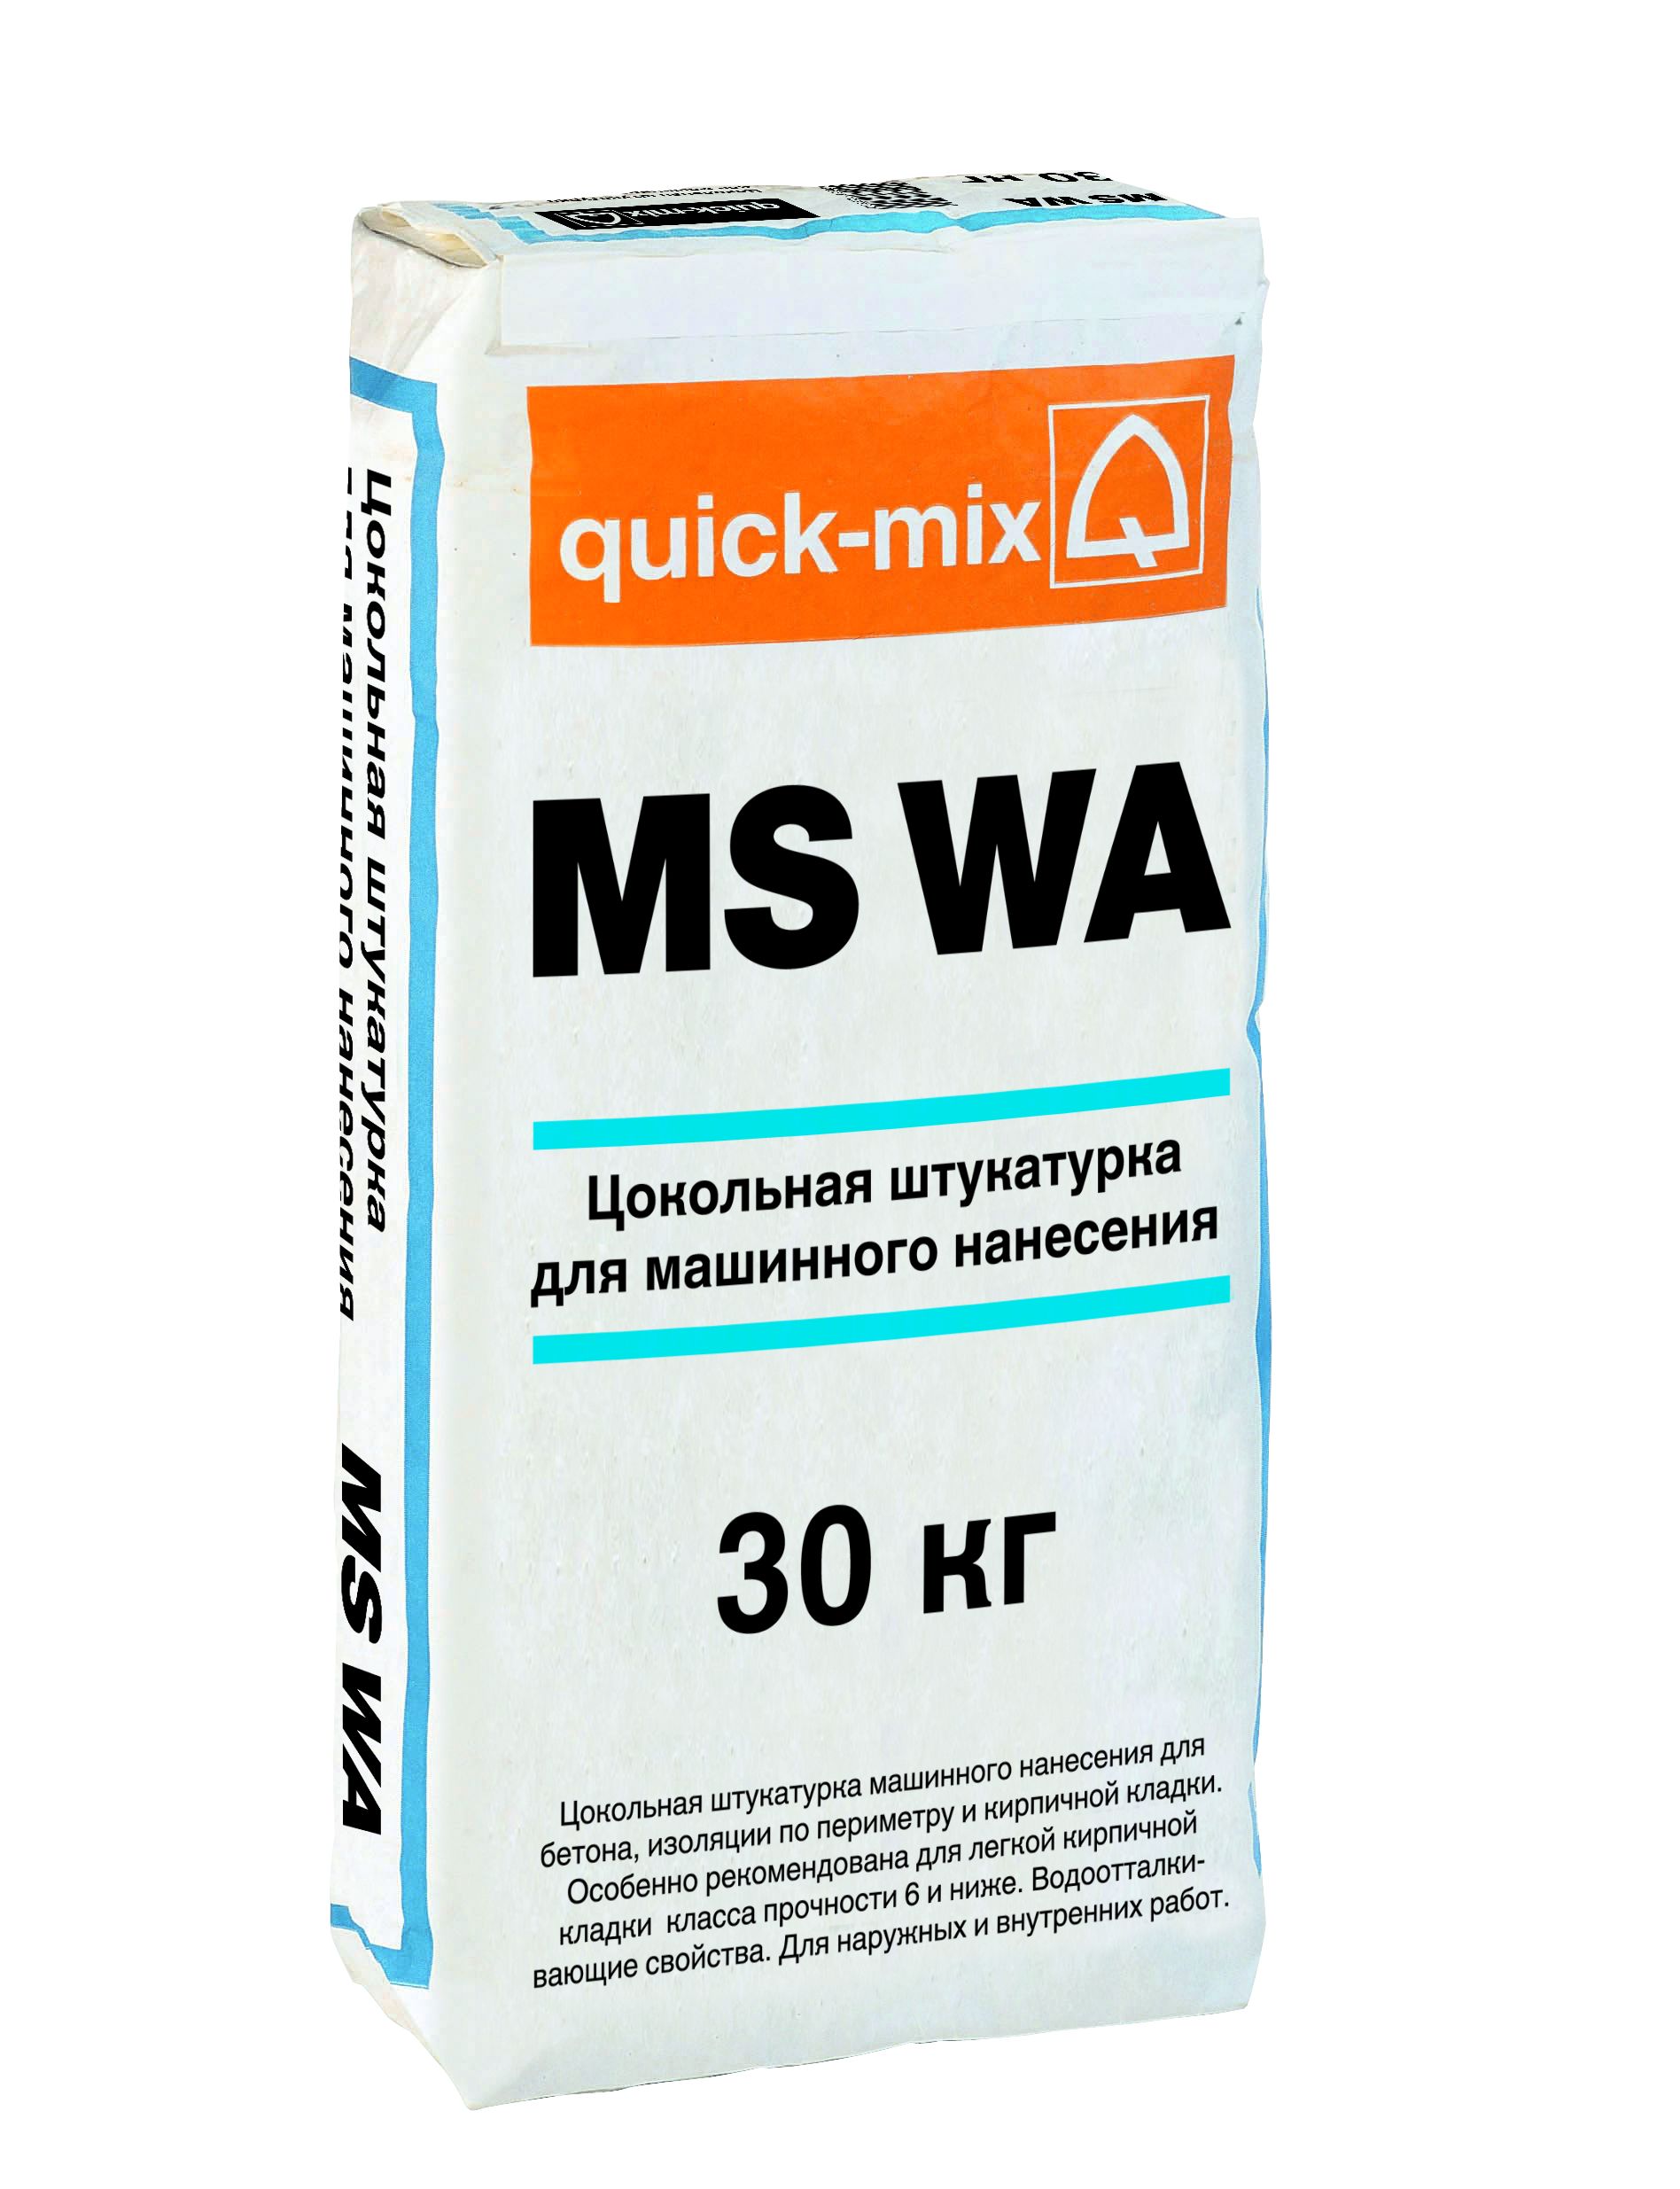 MS WA